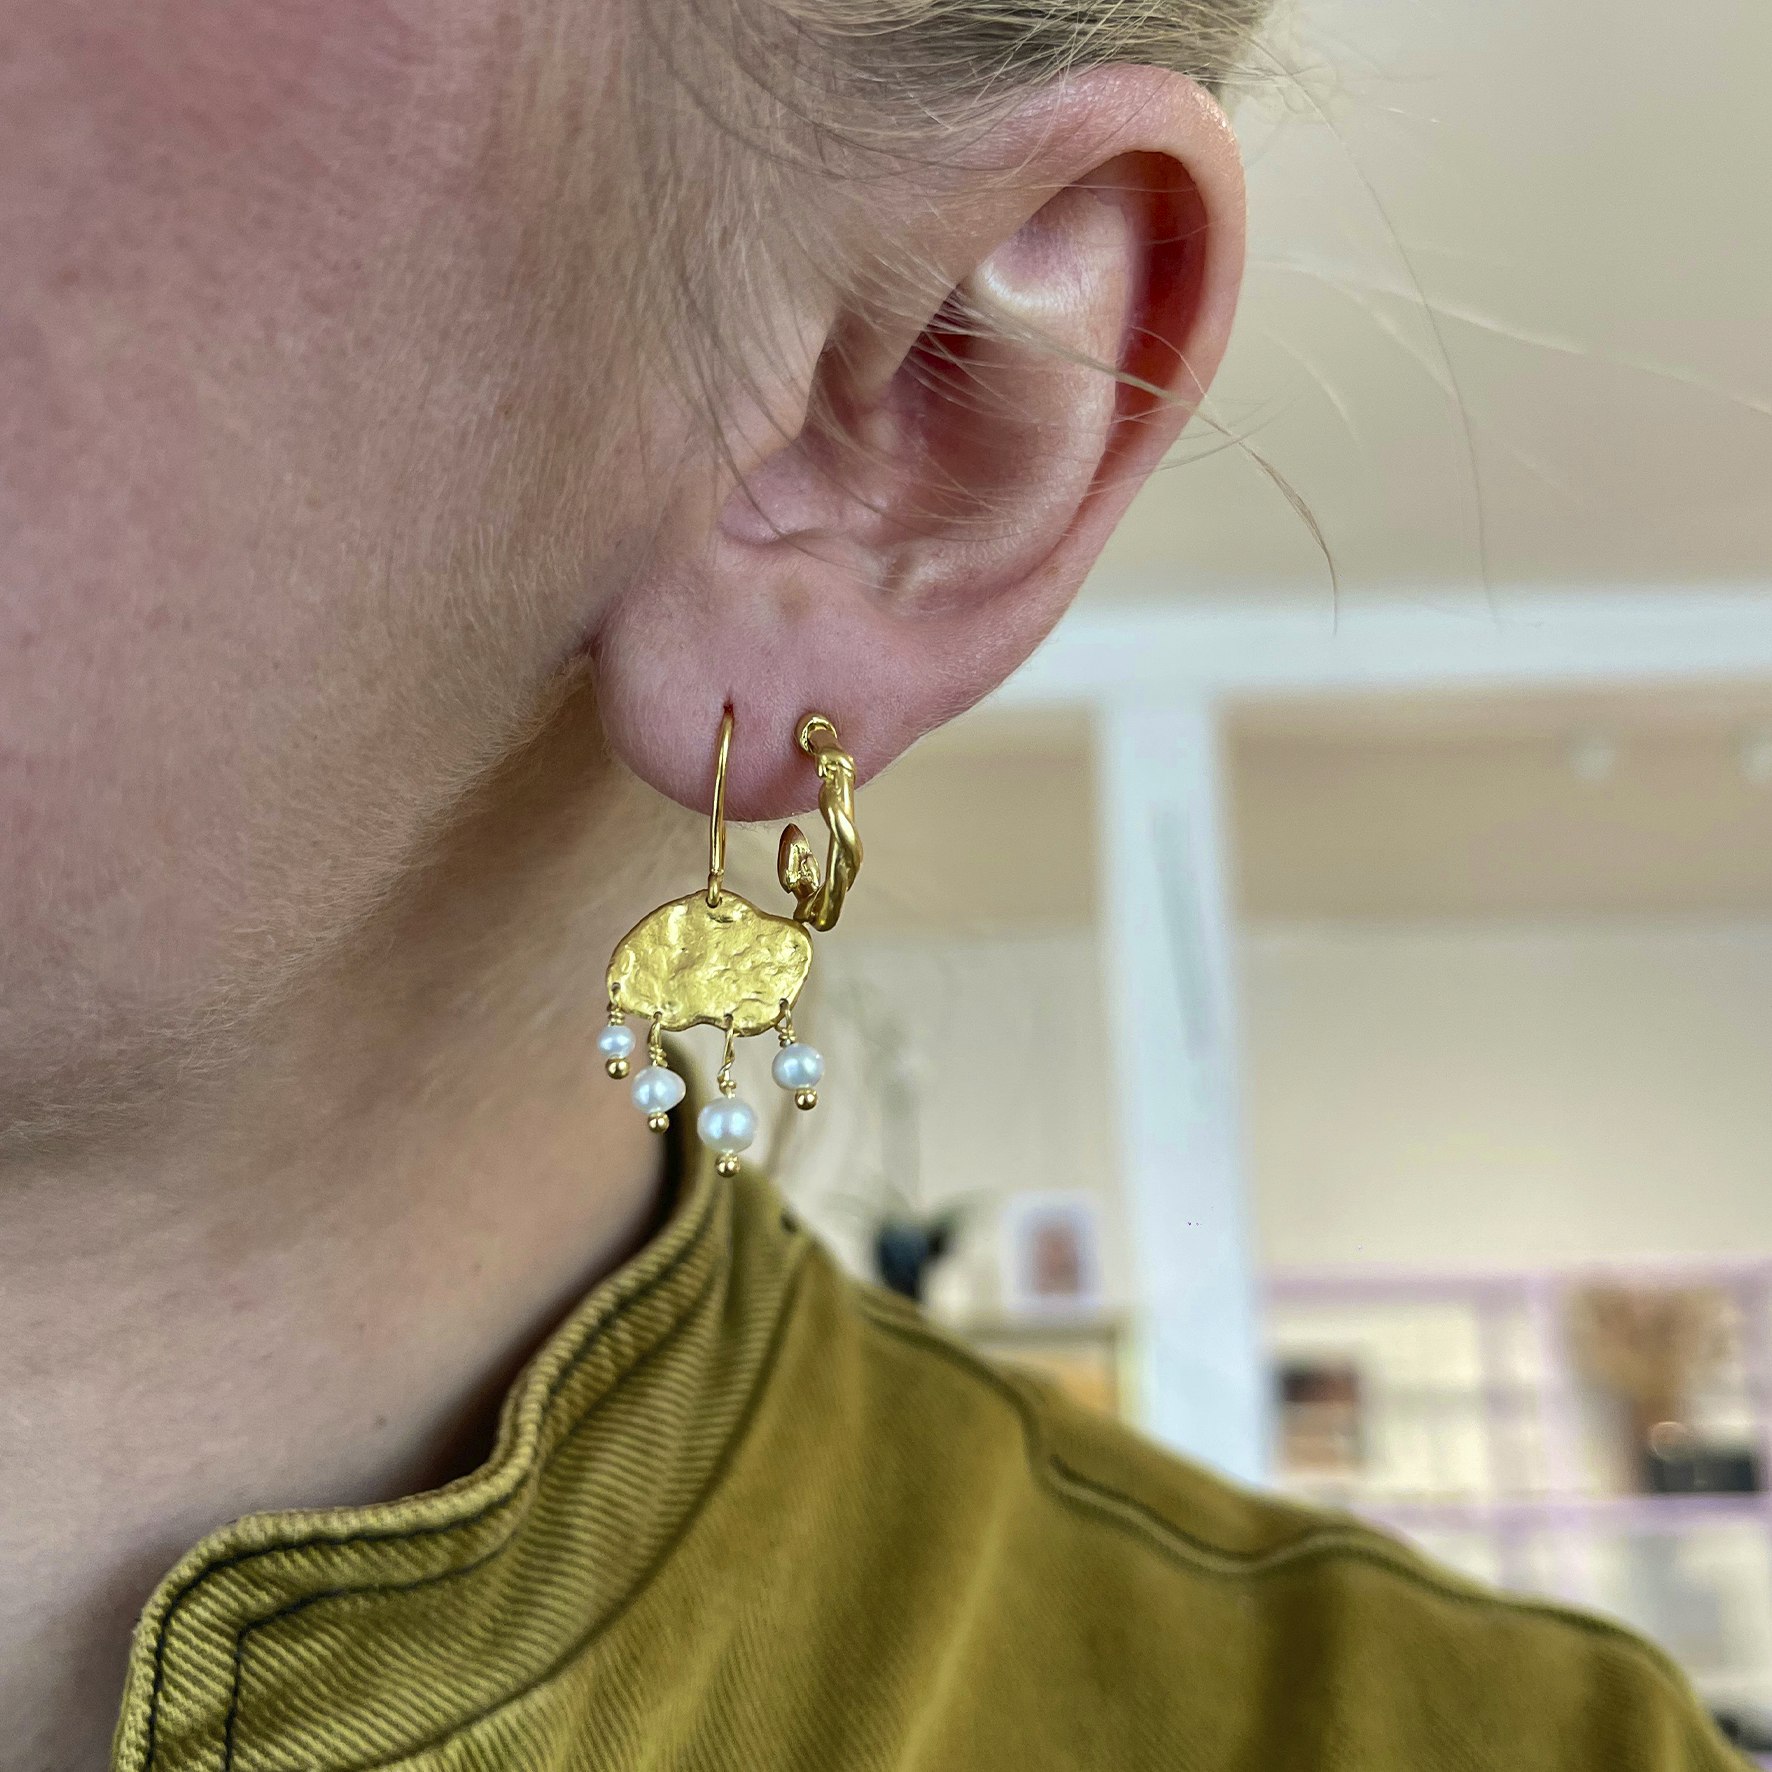 Big Gold Splash Earring – Elegant Pearls van STINE A Jewelry in Verguld-Zilver Sterling 925